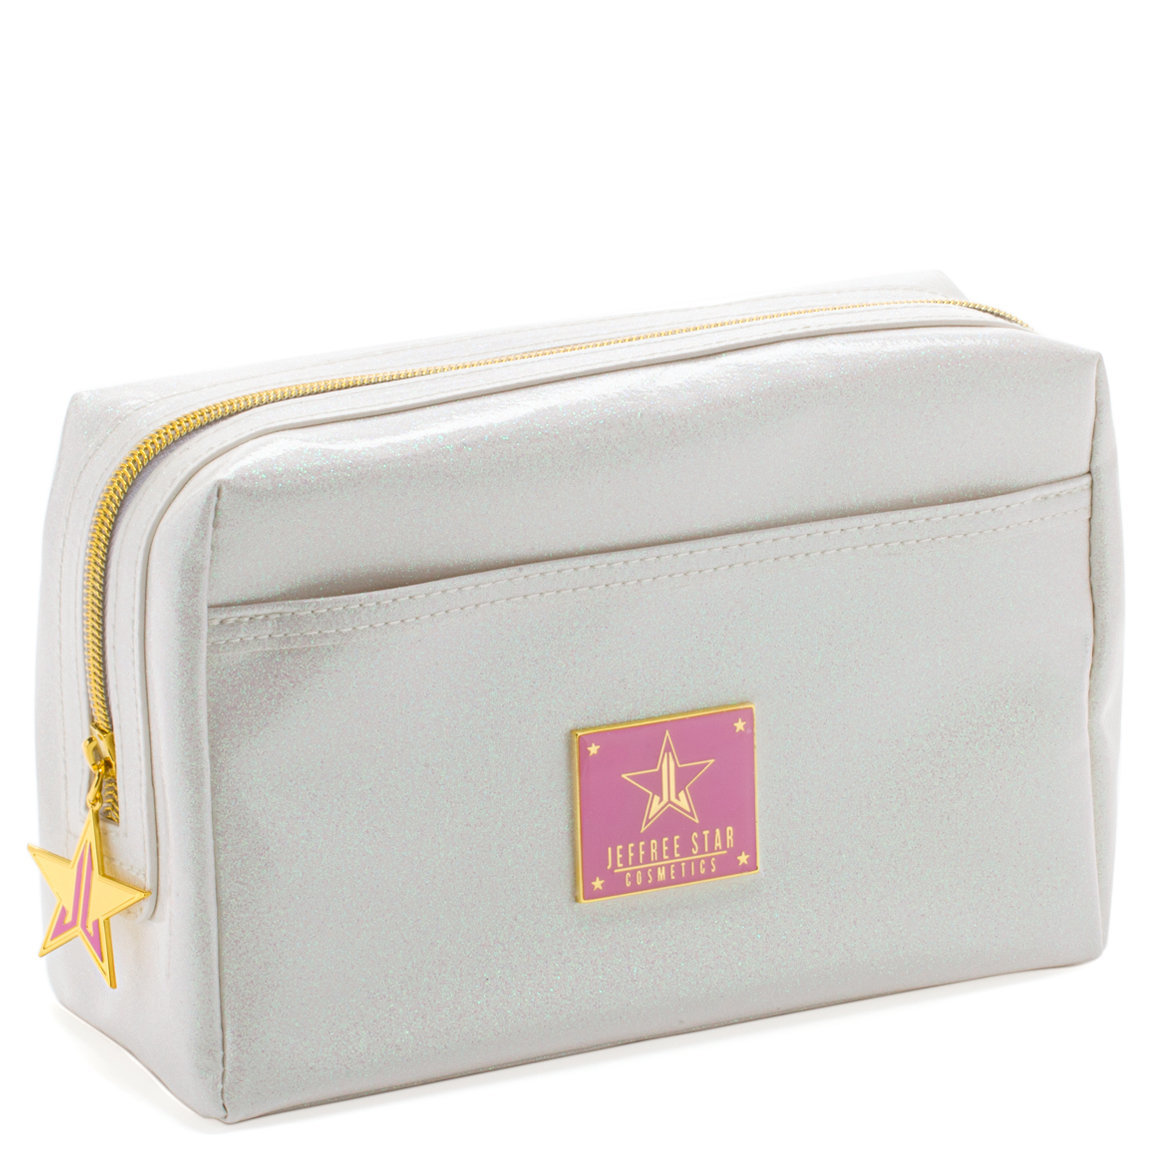 Jeffree Star Cosmetics Glitter Makeup Bag White | Beautylish